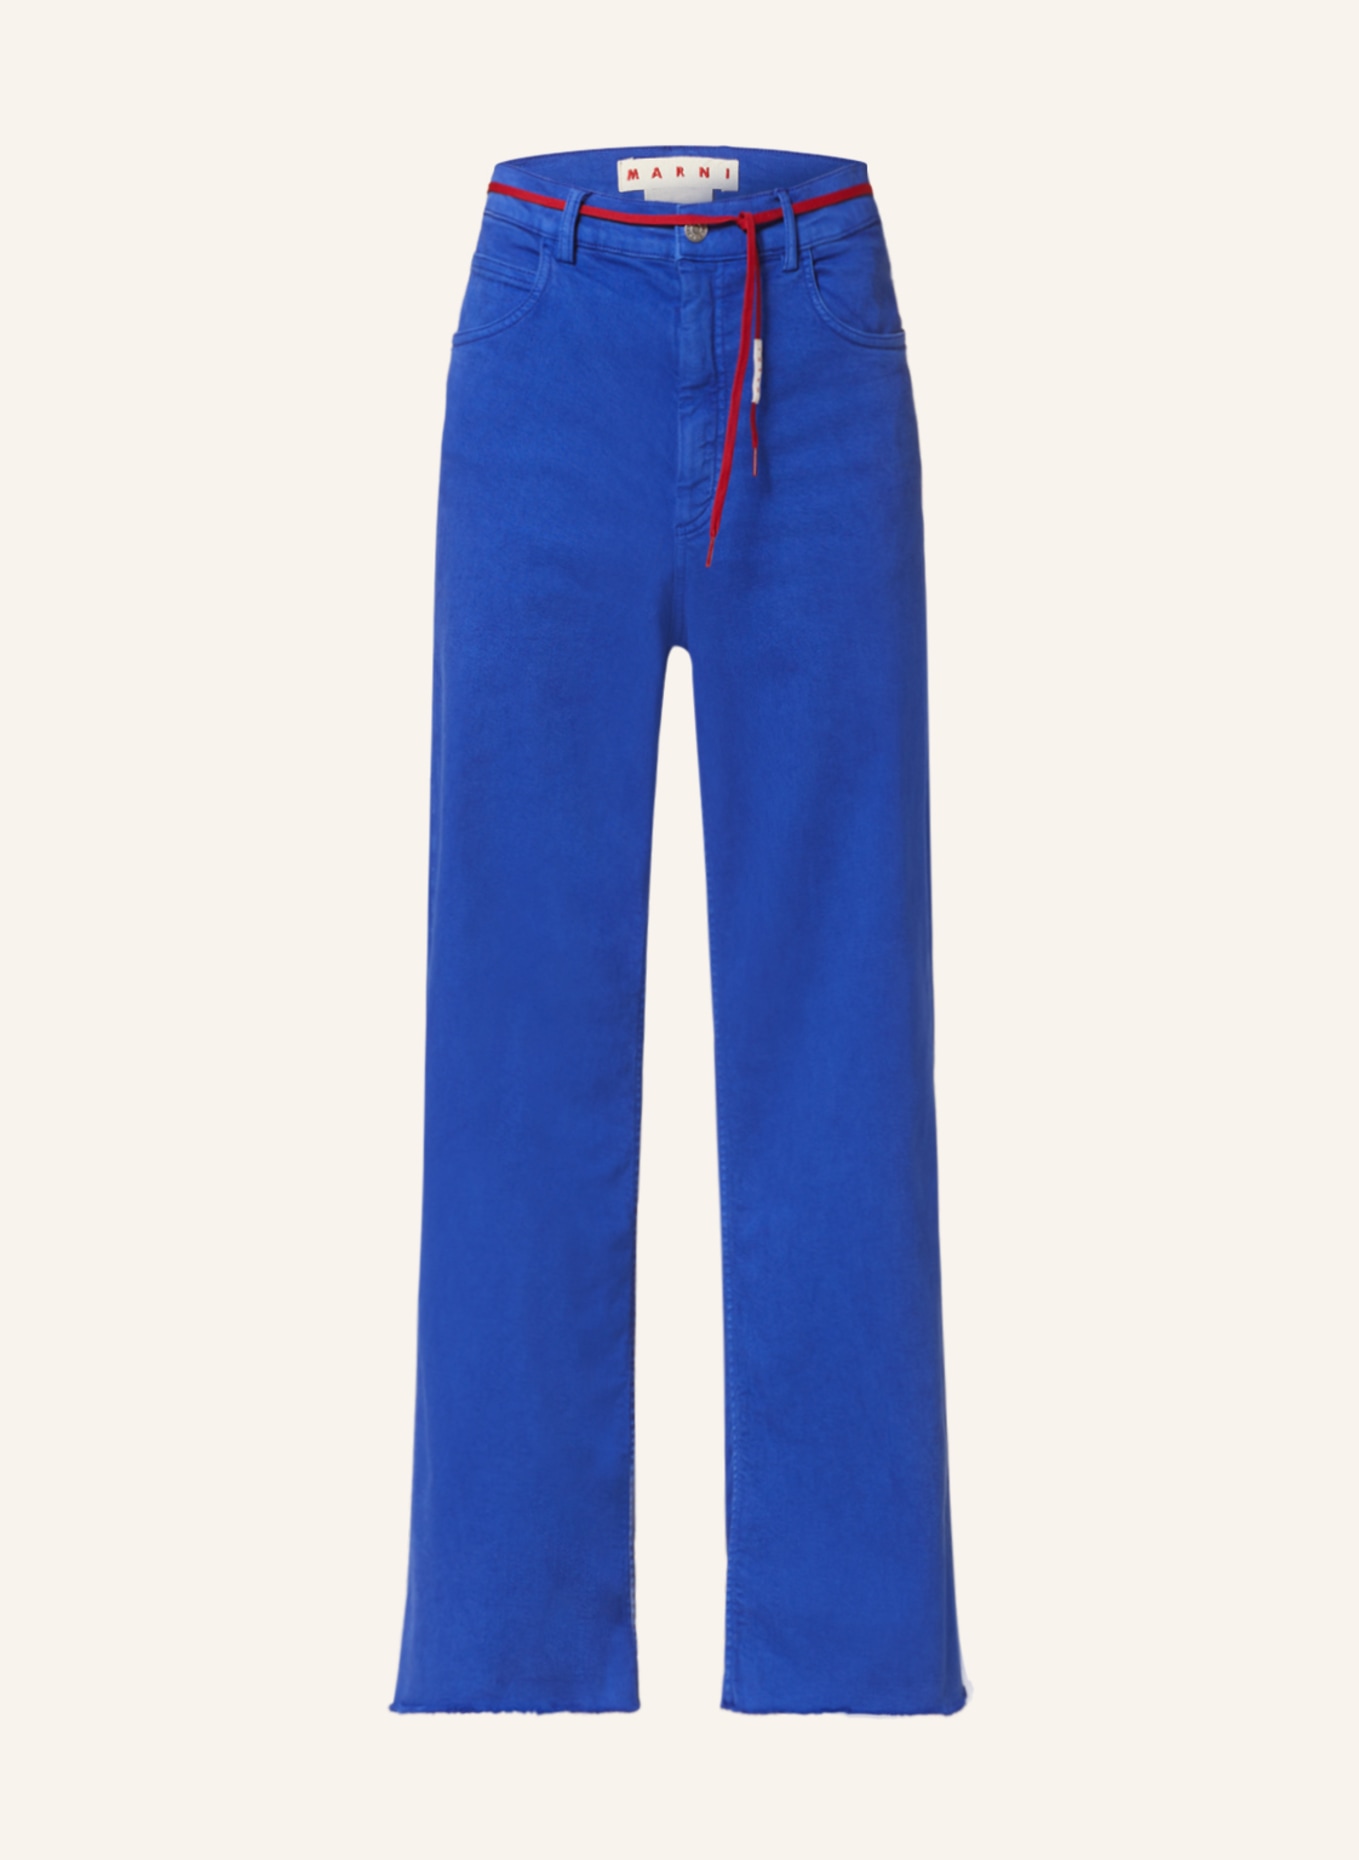 MARNI Jeans Regular Fit, Farbe: BLAU (Bild 1)